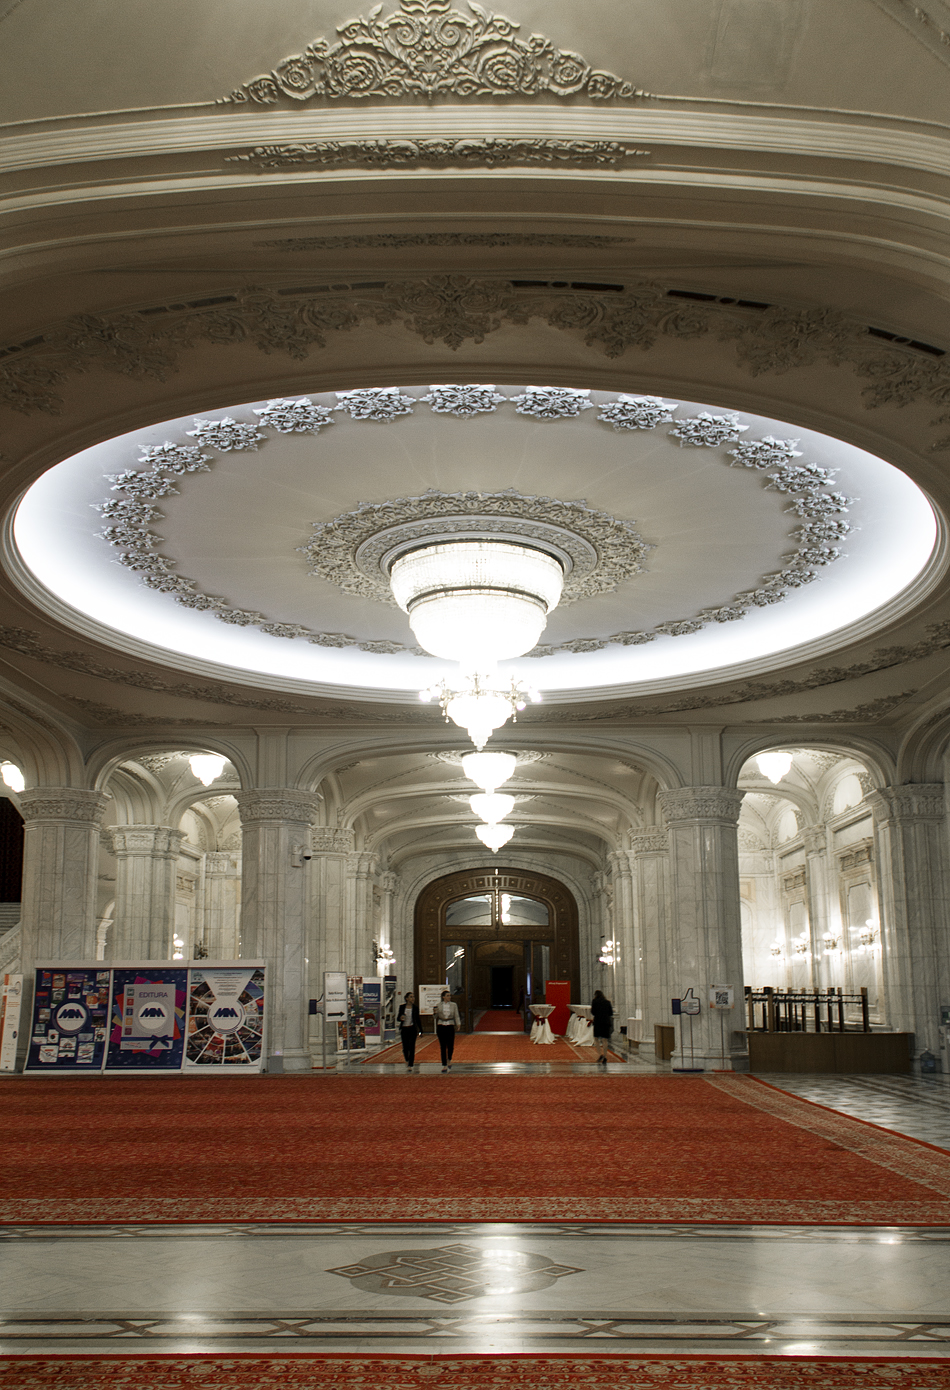 București, Palatul Parlamentului, Interior, Foyer